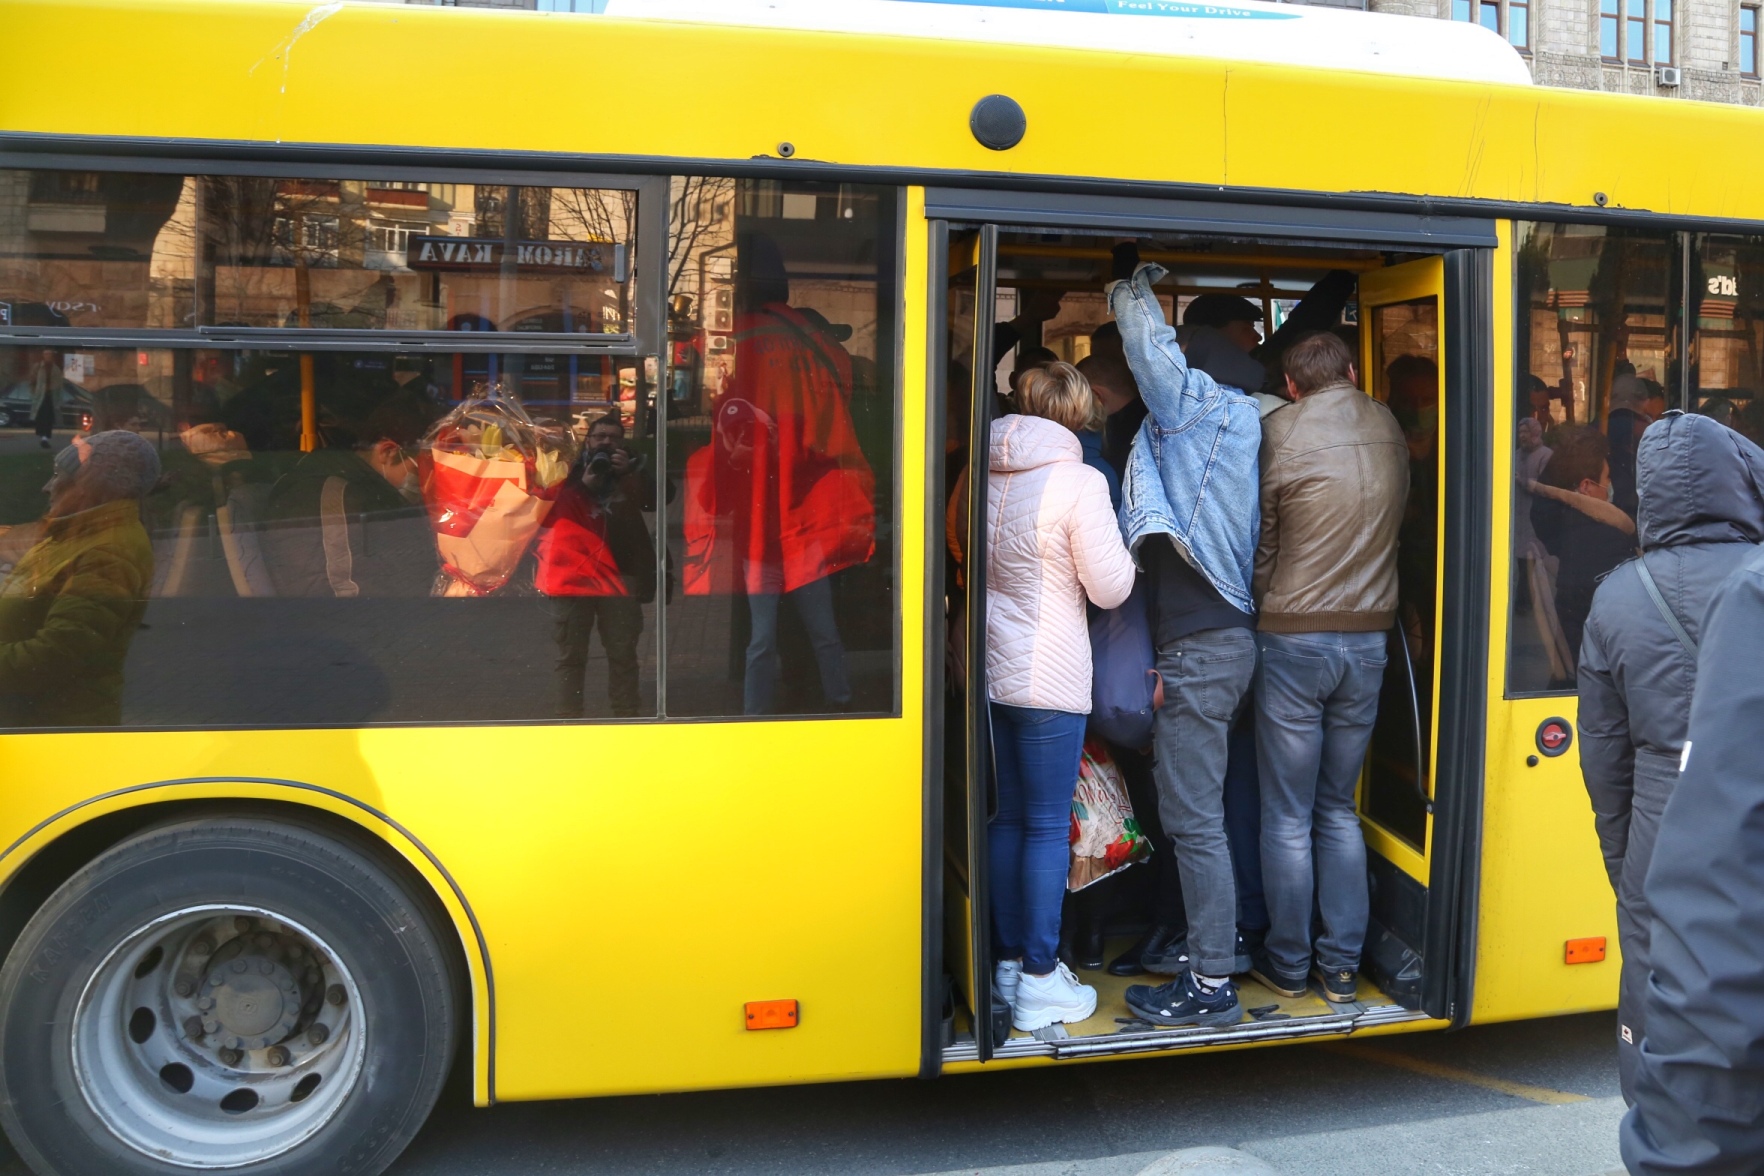 Много народу в автобусе. Переполненный общественный транспорт. Автобус битком. Люди в переполненном автобусе. Набитый автобус.